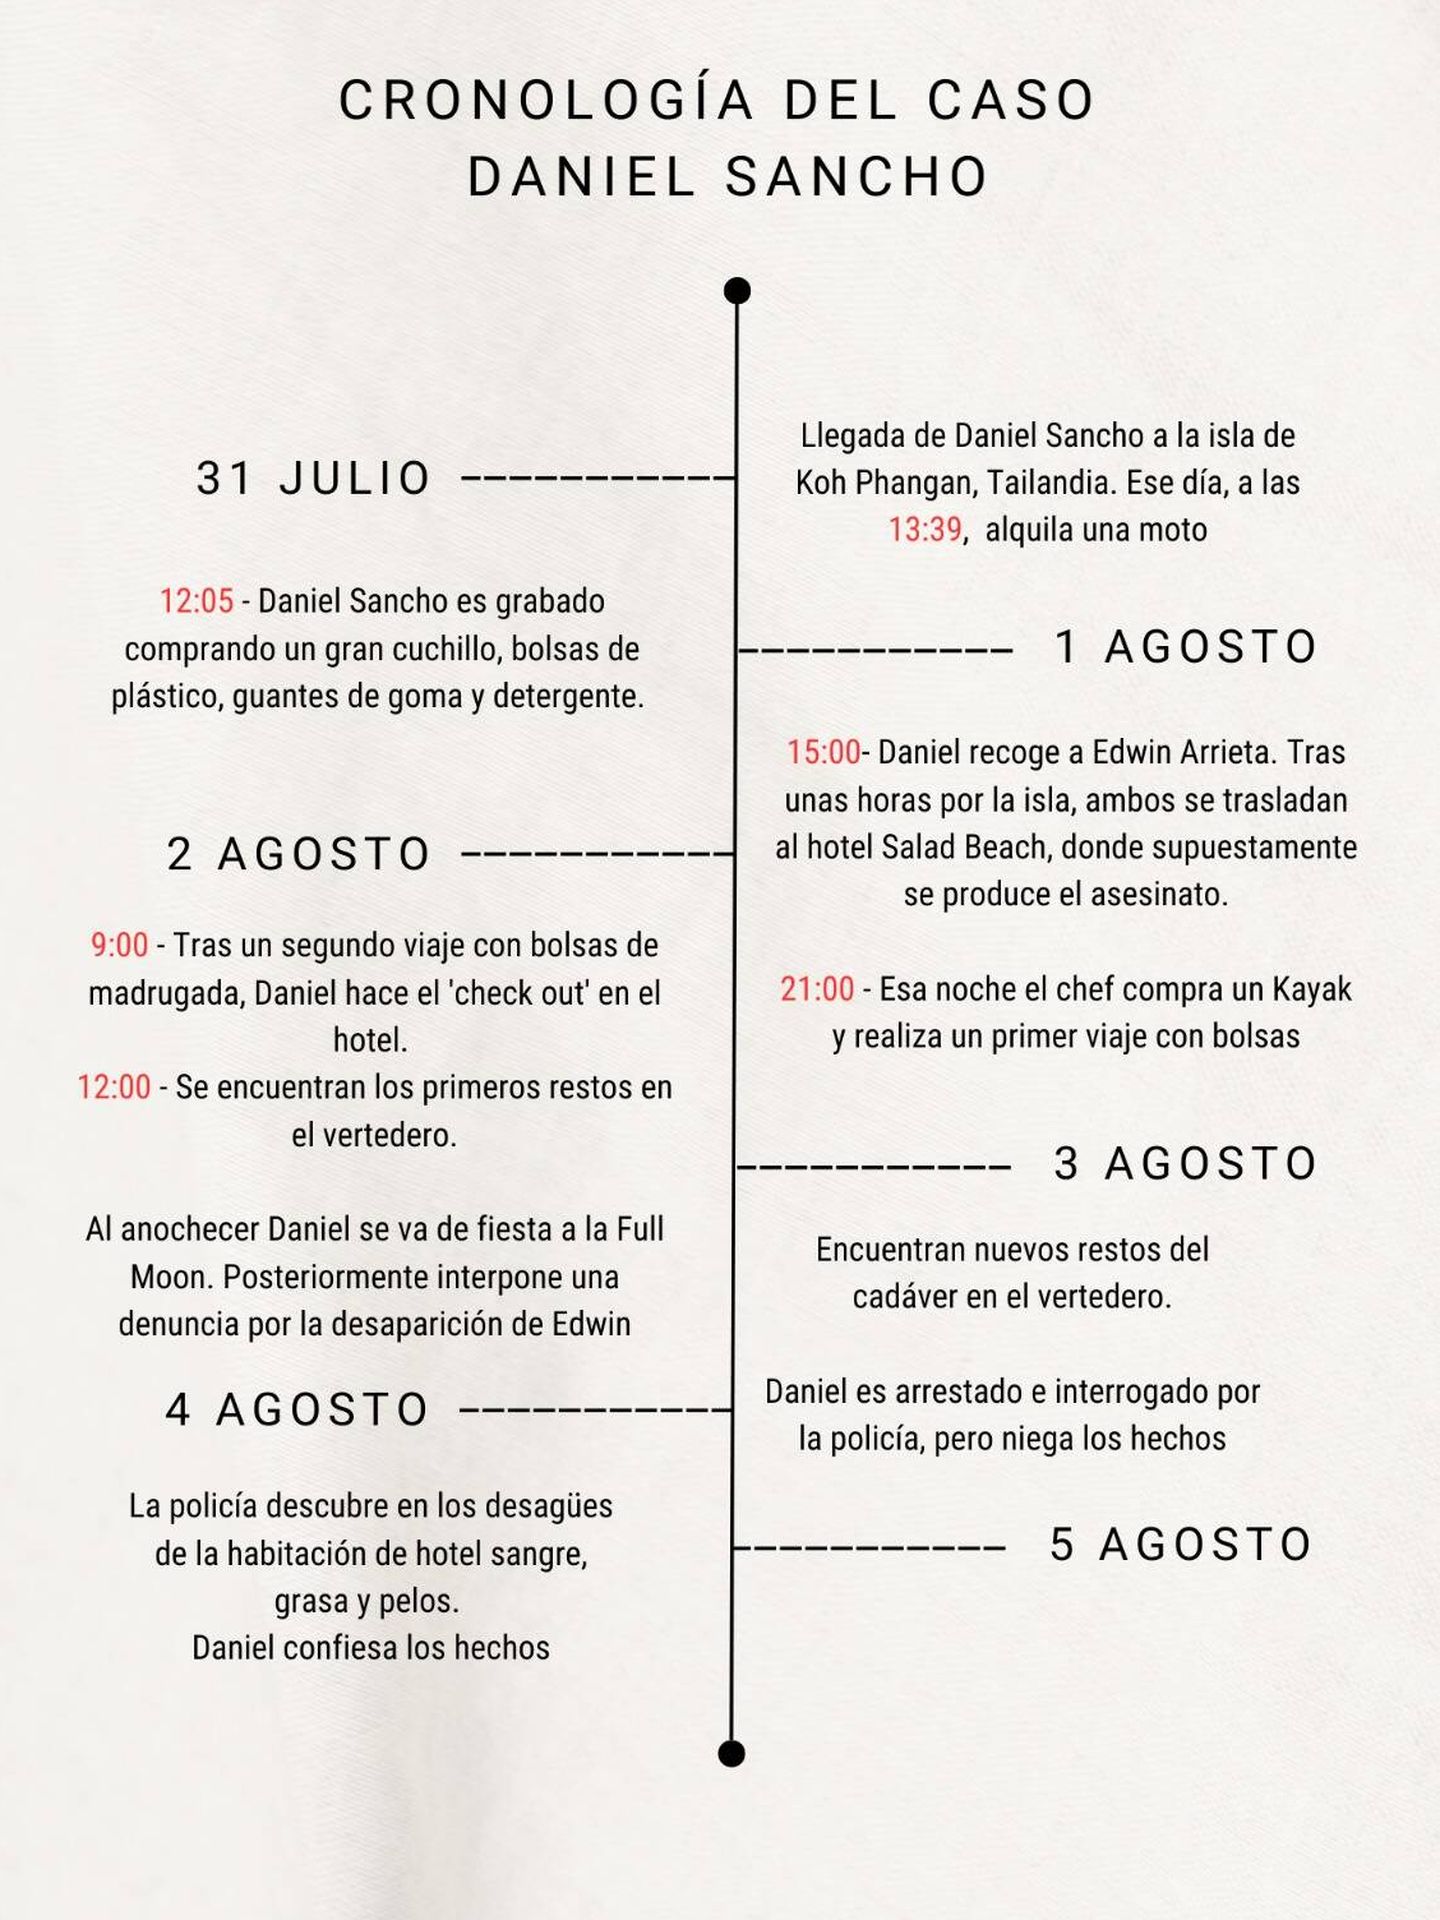 Cronología de hechos, caso Daniel Sancho. (Vanitatis)